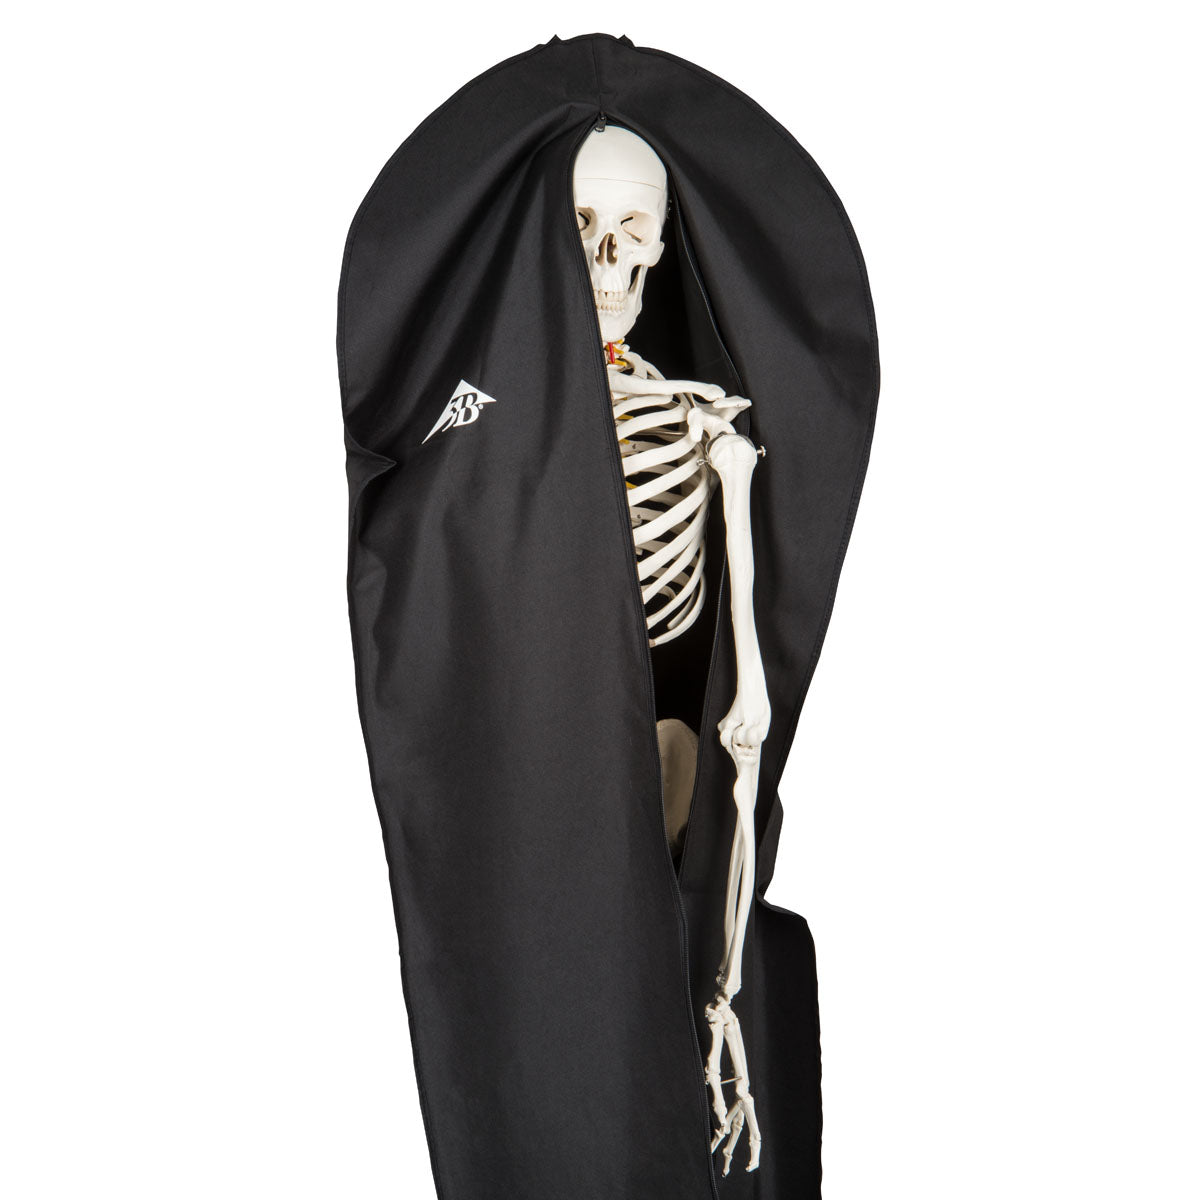 Støvpose til skelet